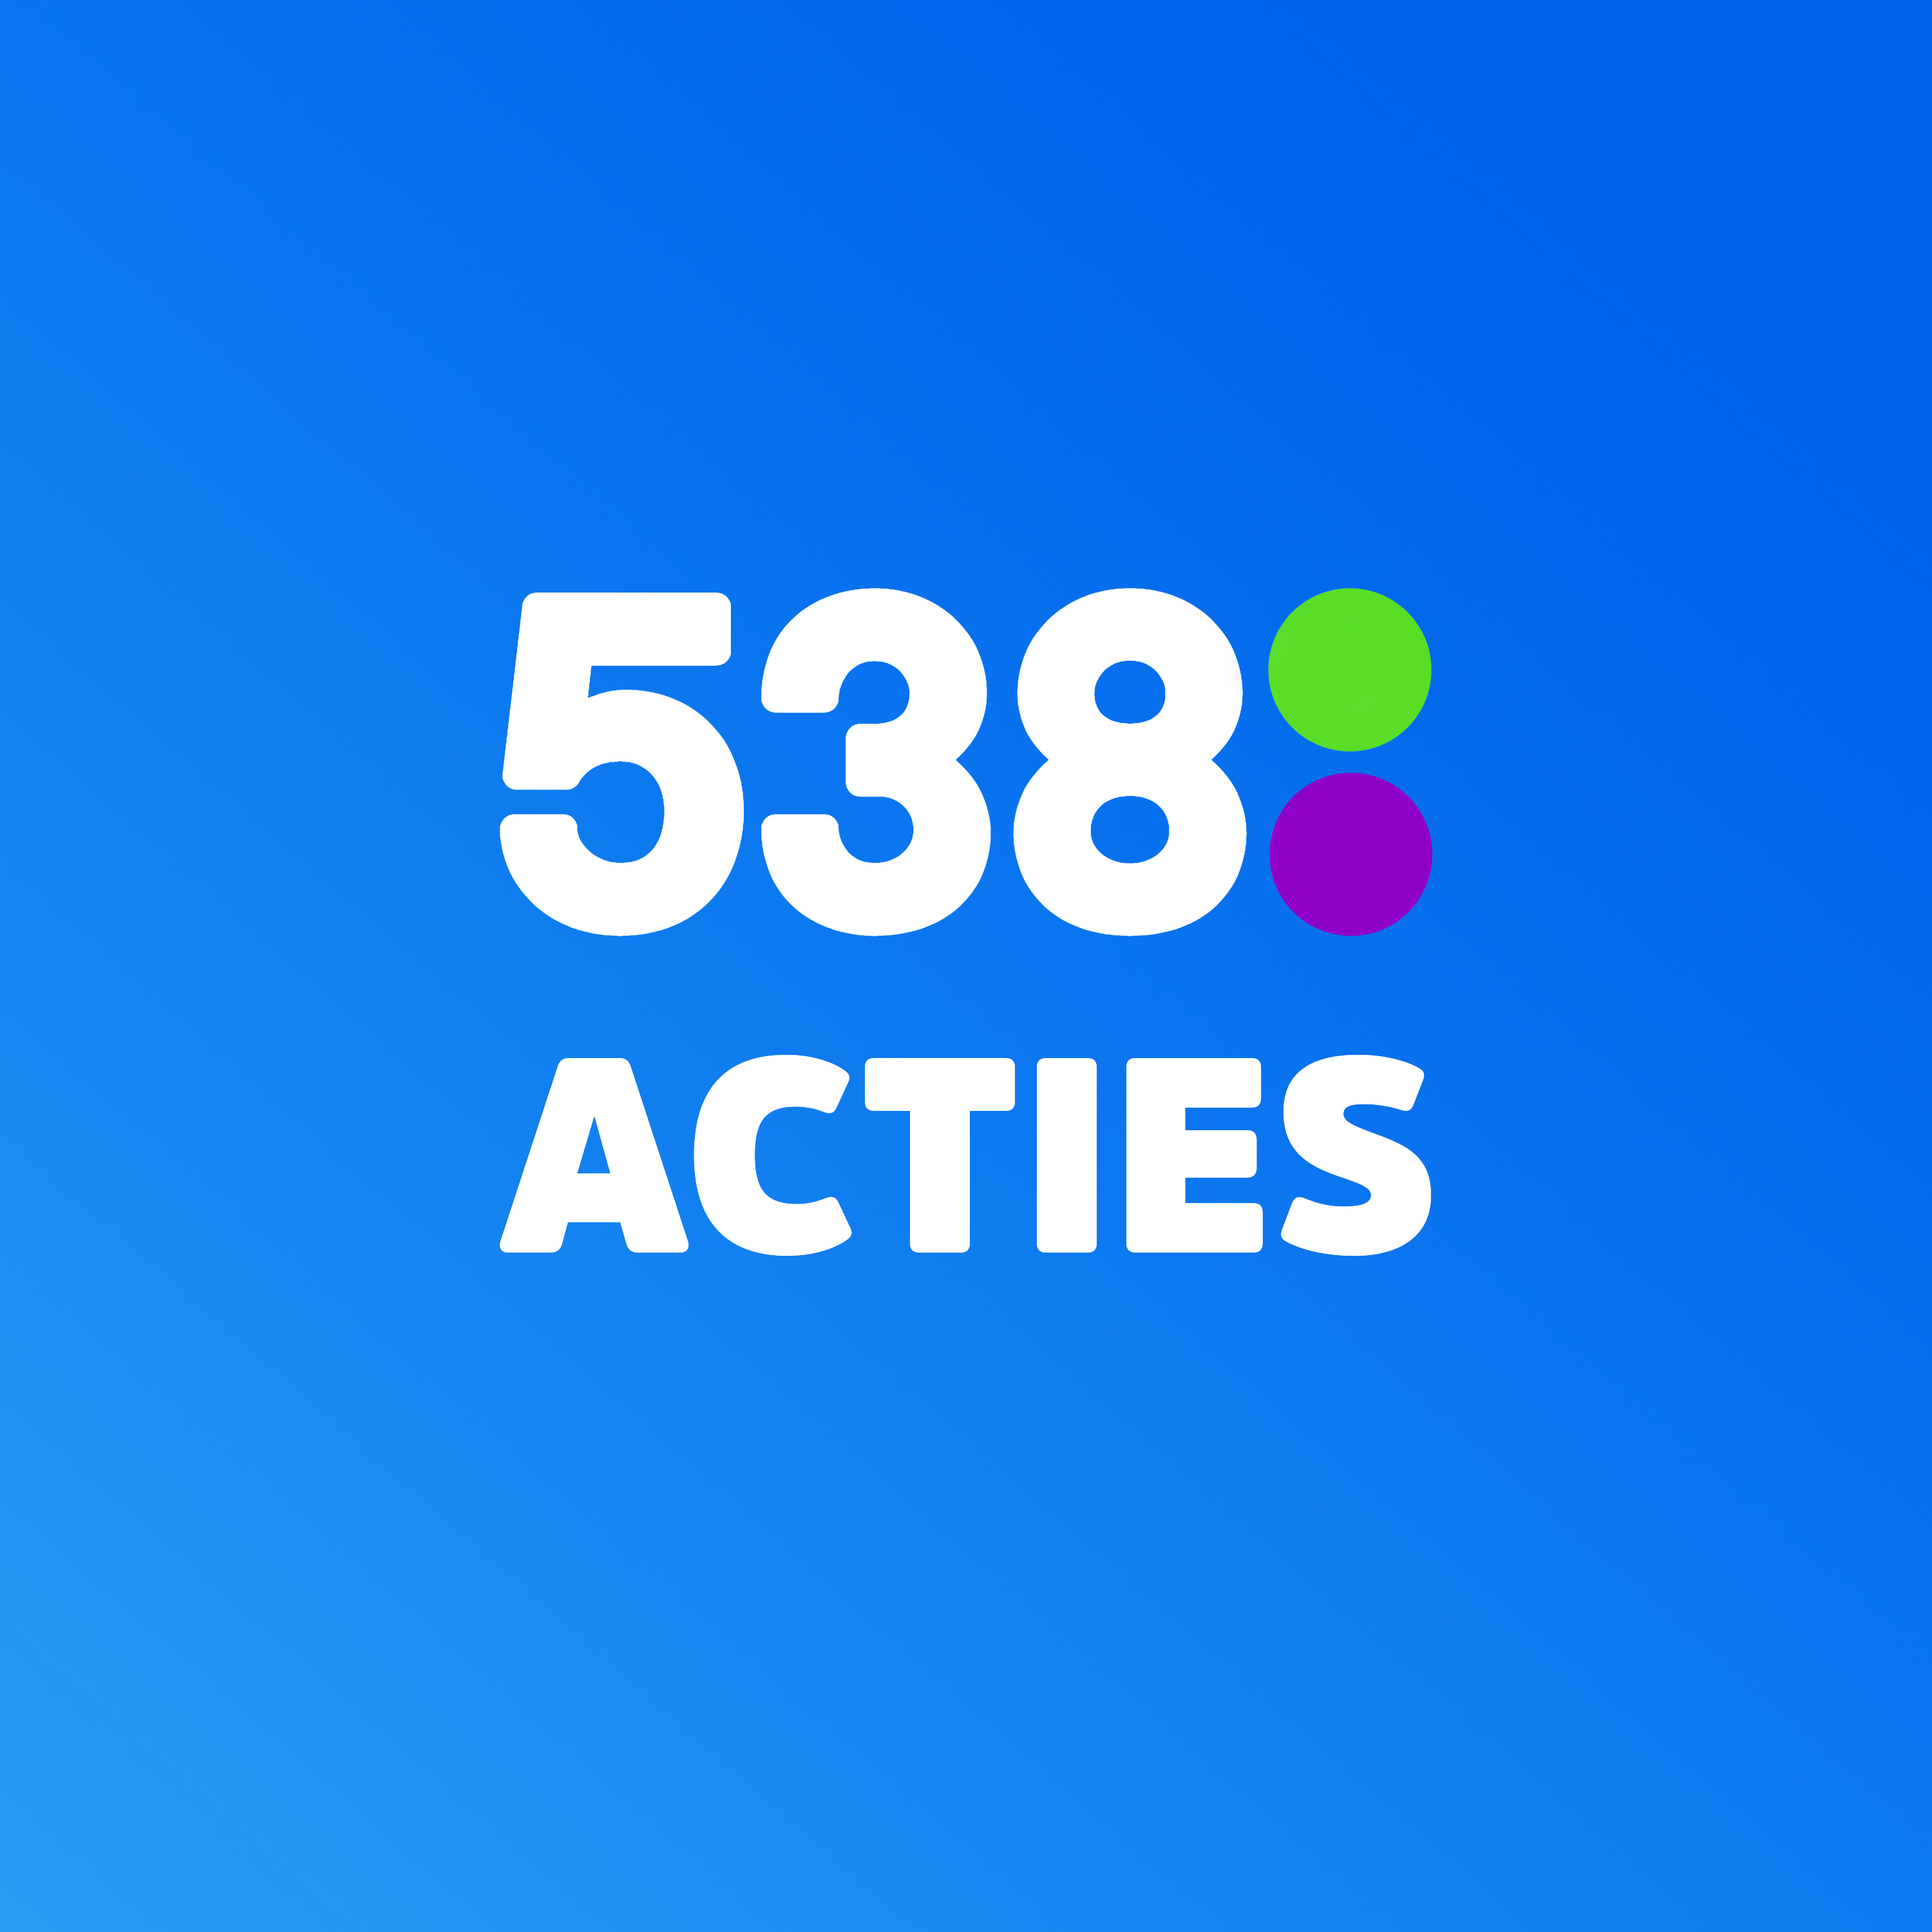 538 Acties